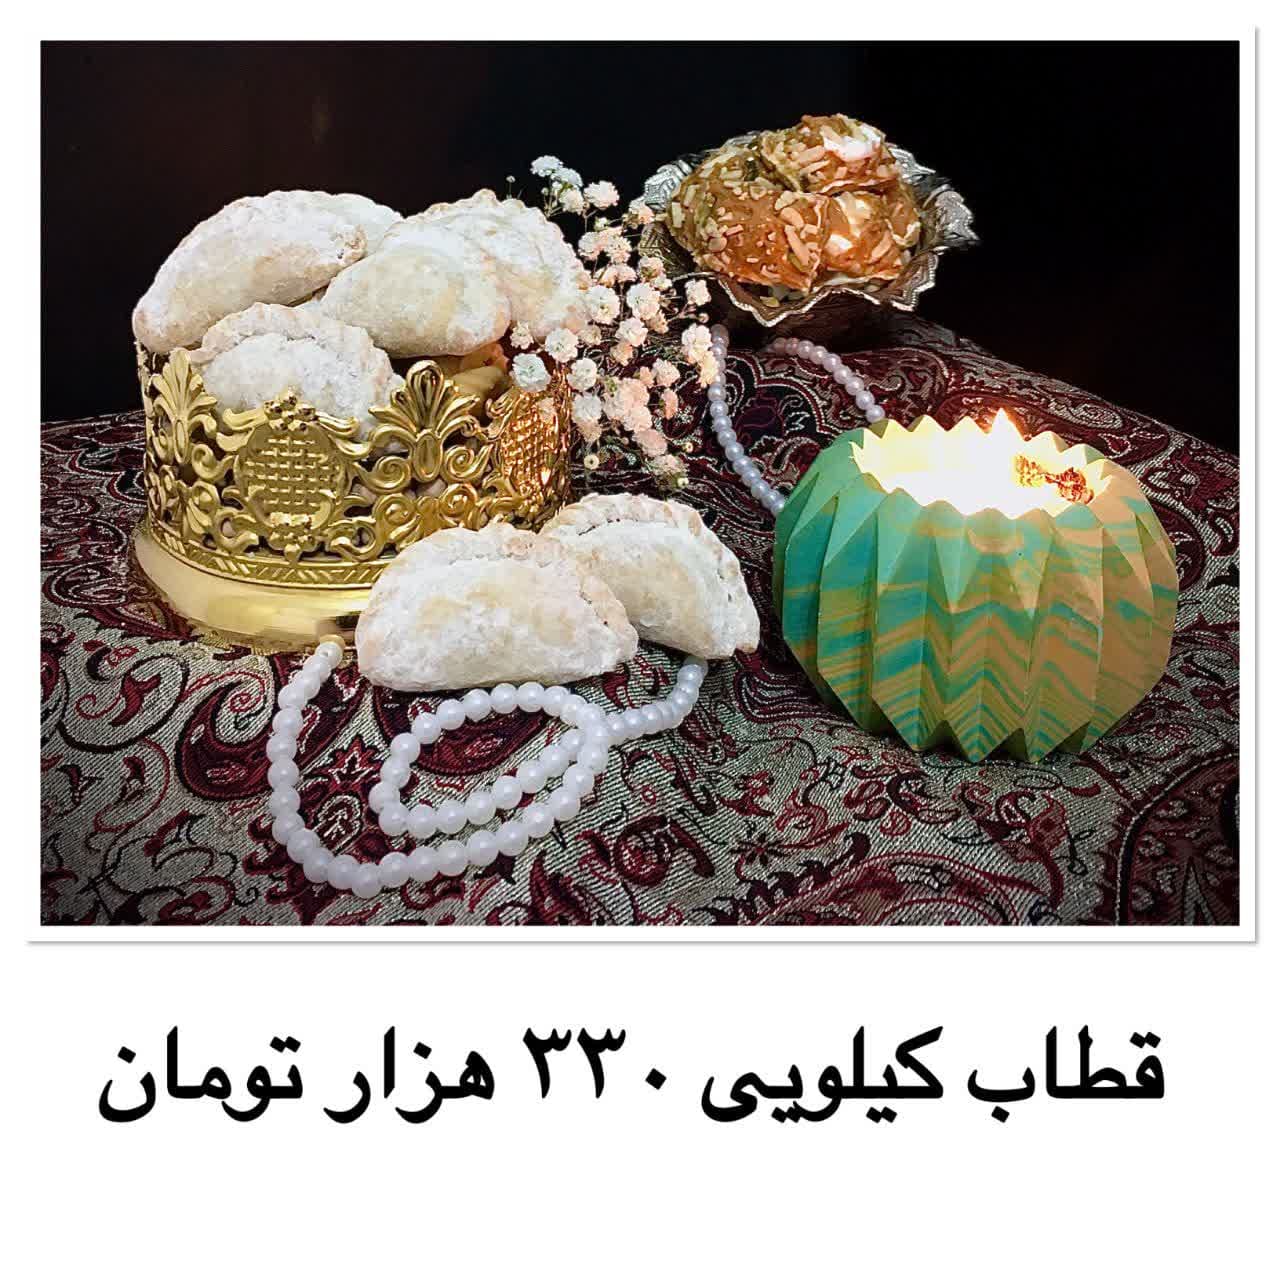 شیرینی قطاب Qatab sweets